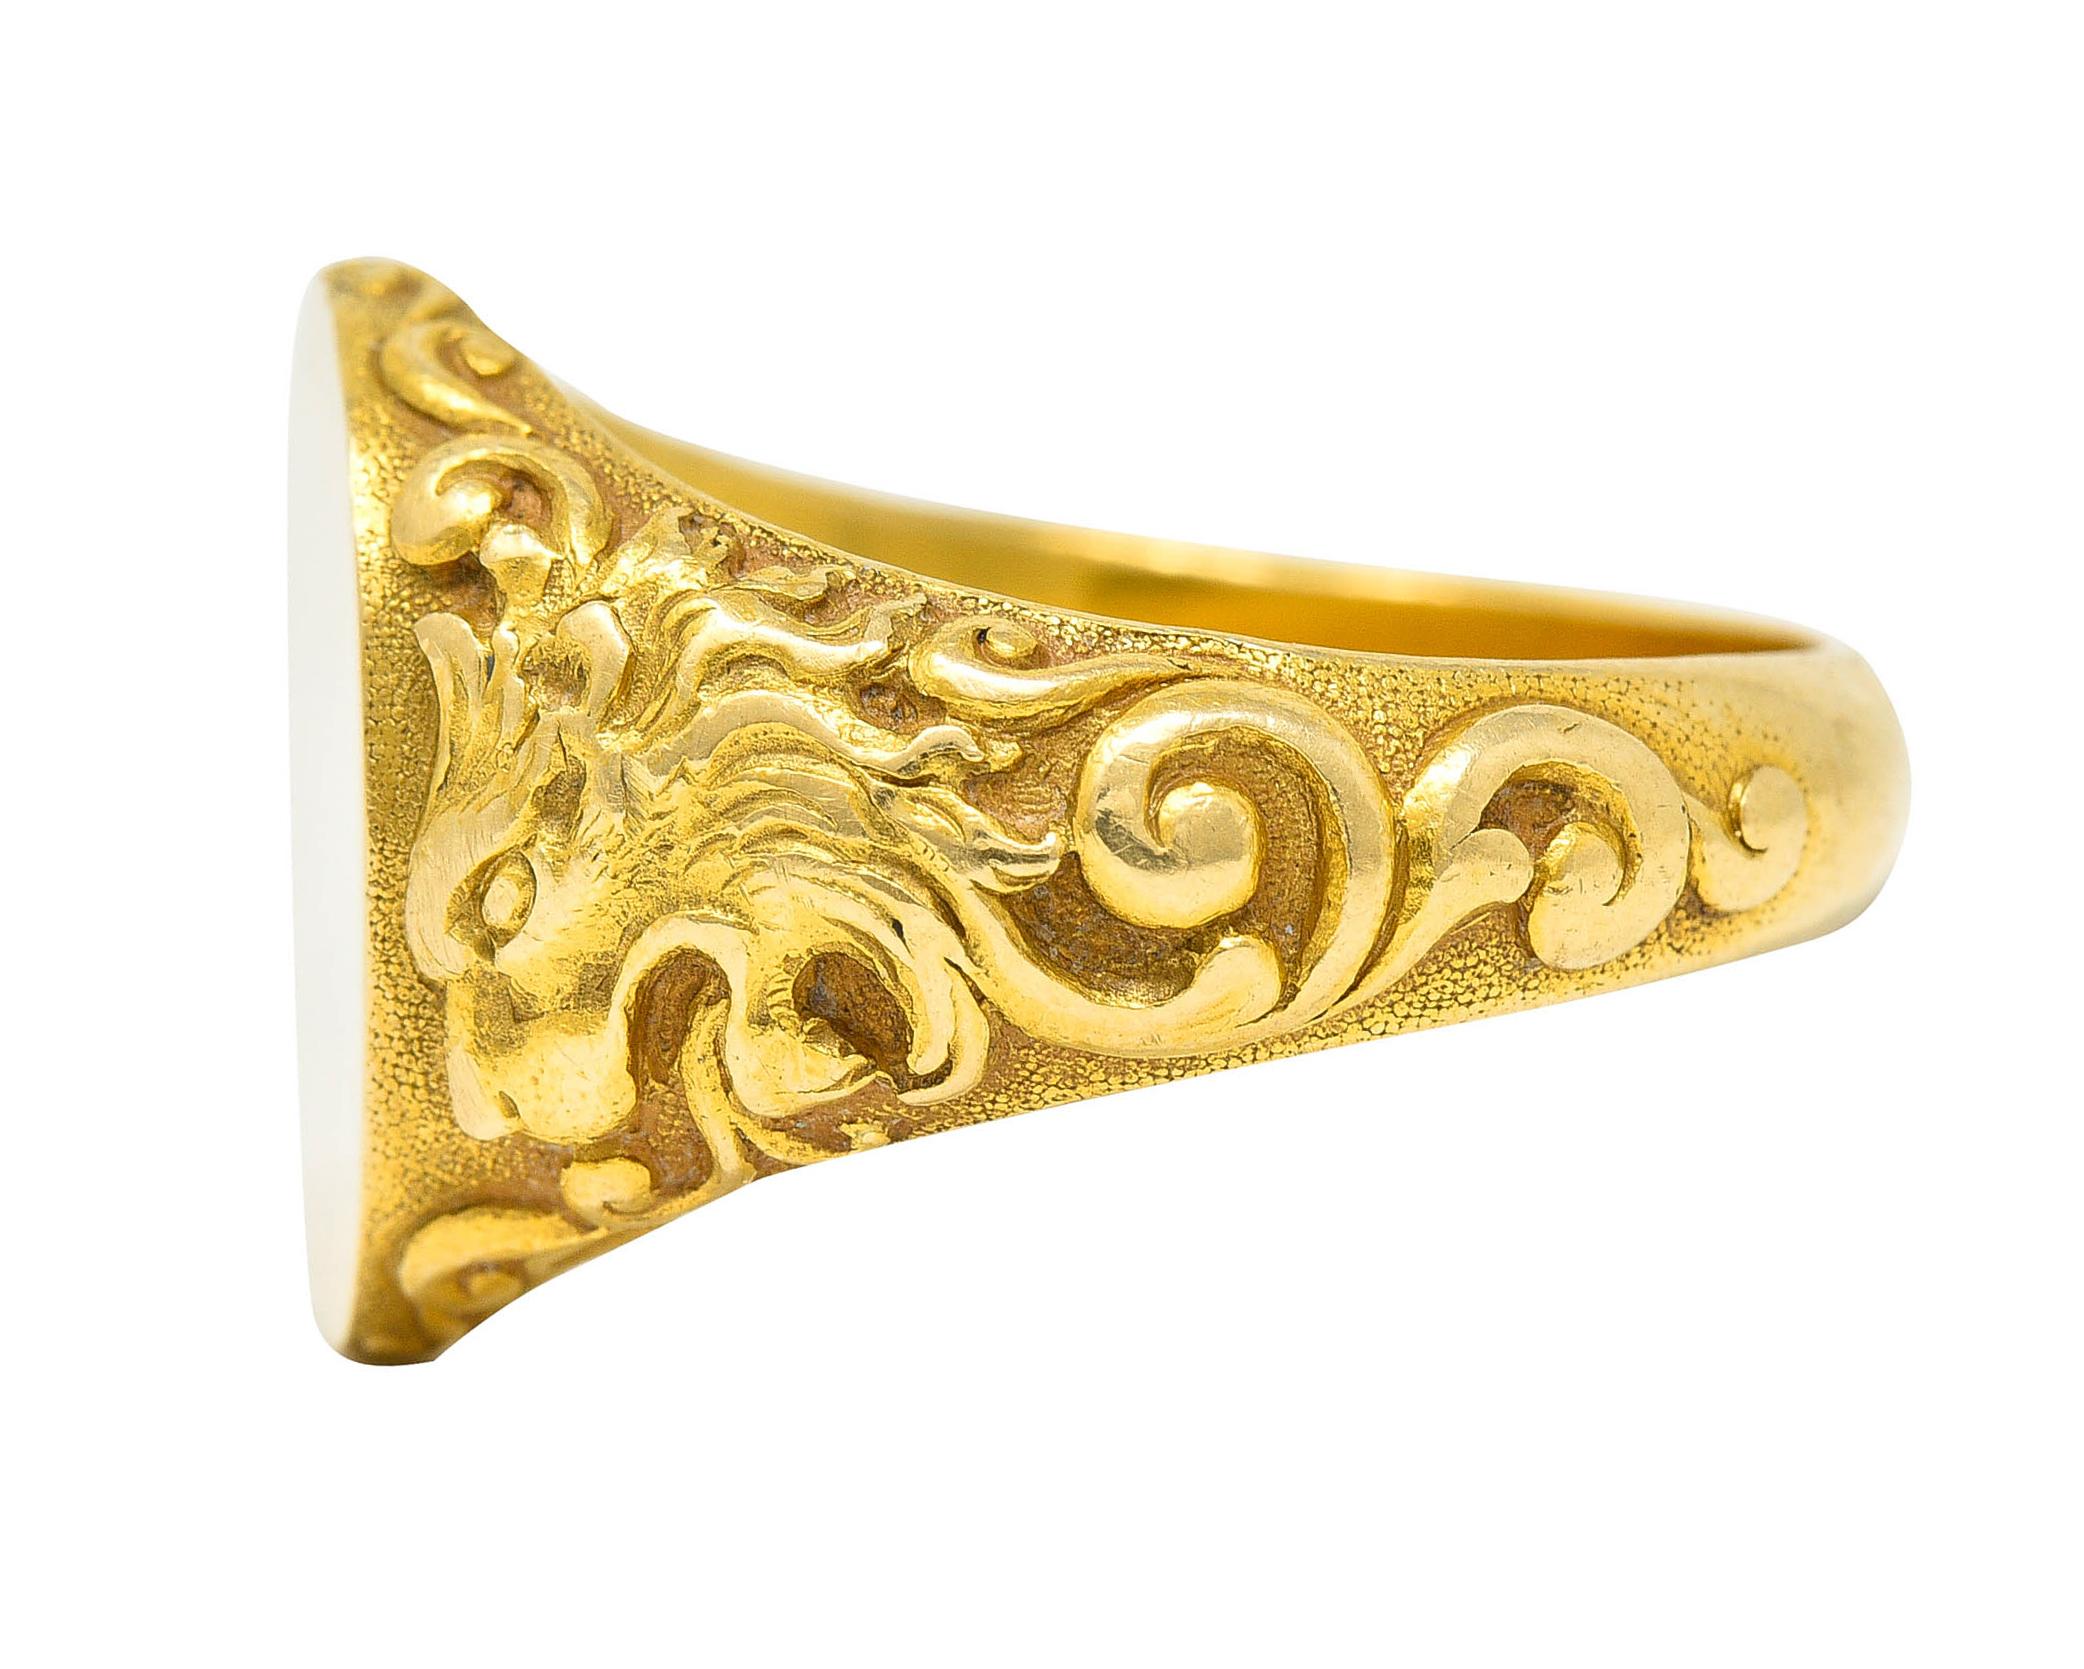 Tiffany & Co. Art Nouveau 18 Karat Gold Unisex Lion Signet Ring 2